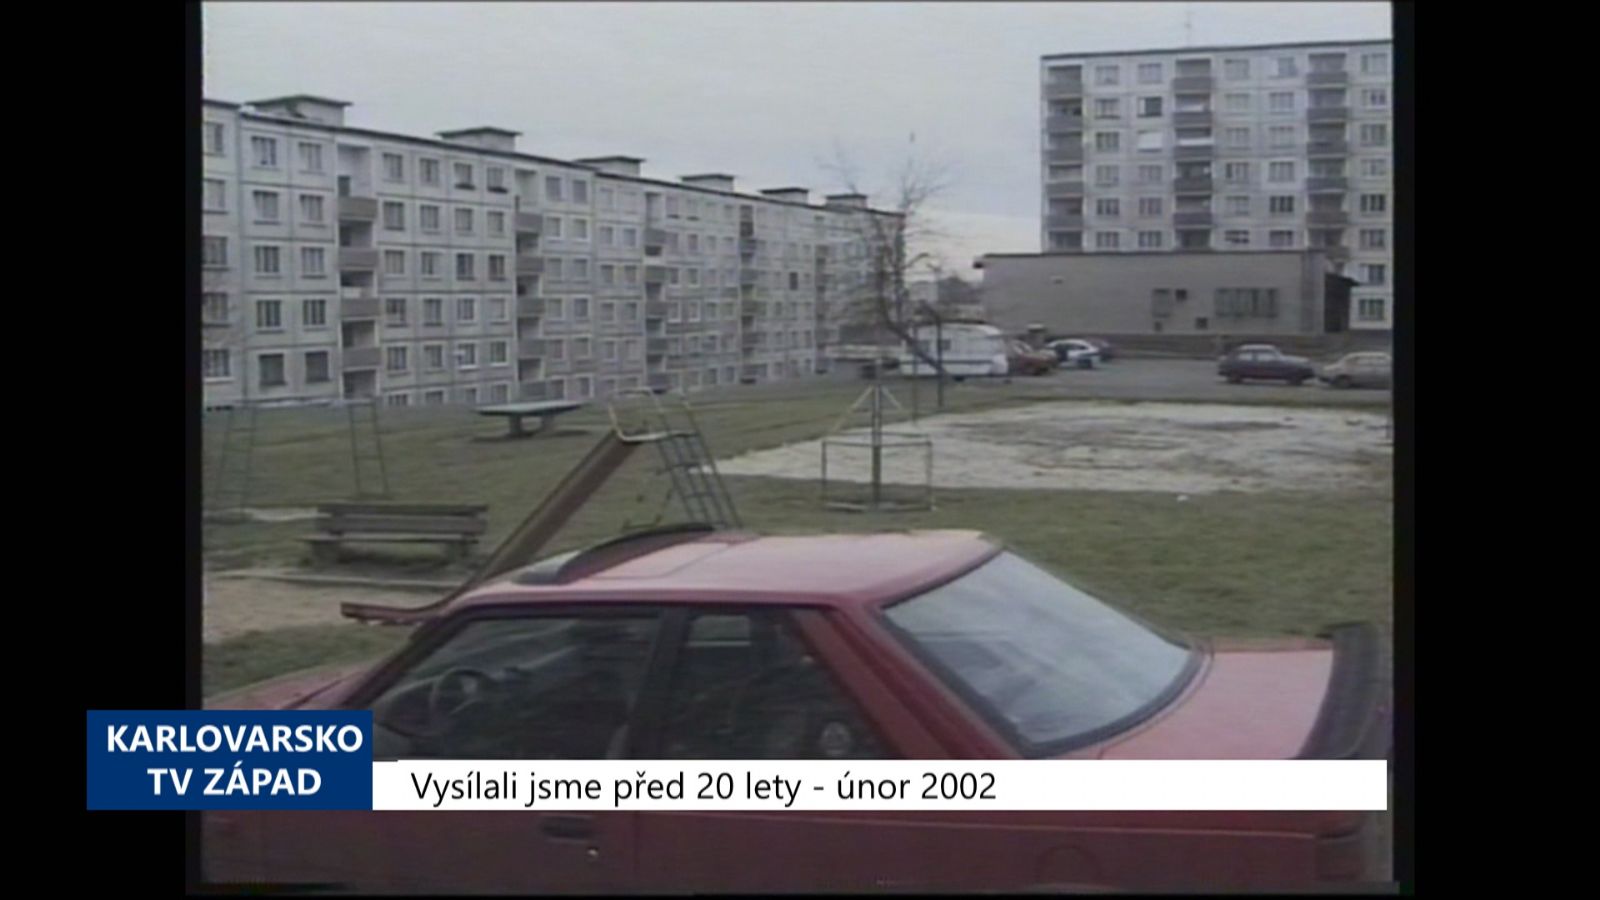 2002 – Sokolov: Chodníky se vyvýší nad vozovku kvůli parkování (TV Západ)